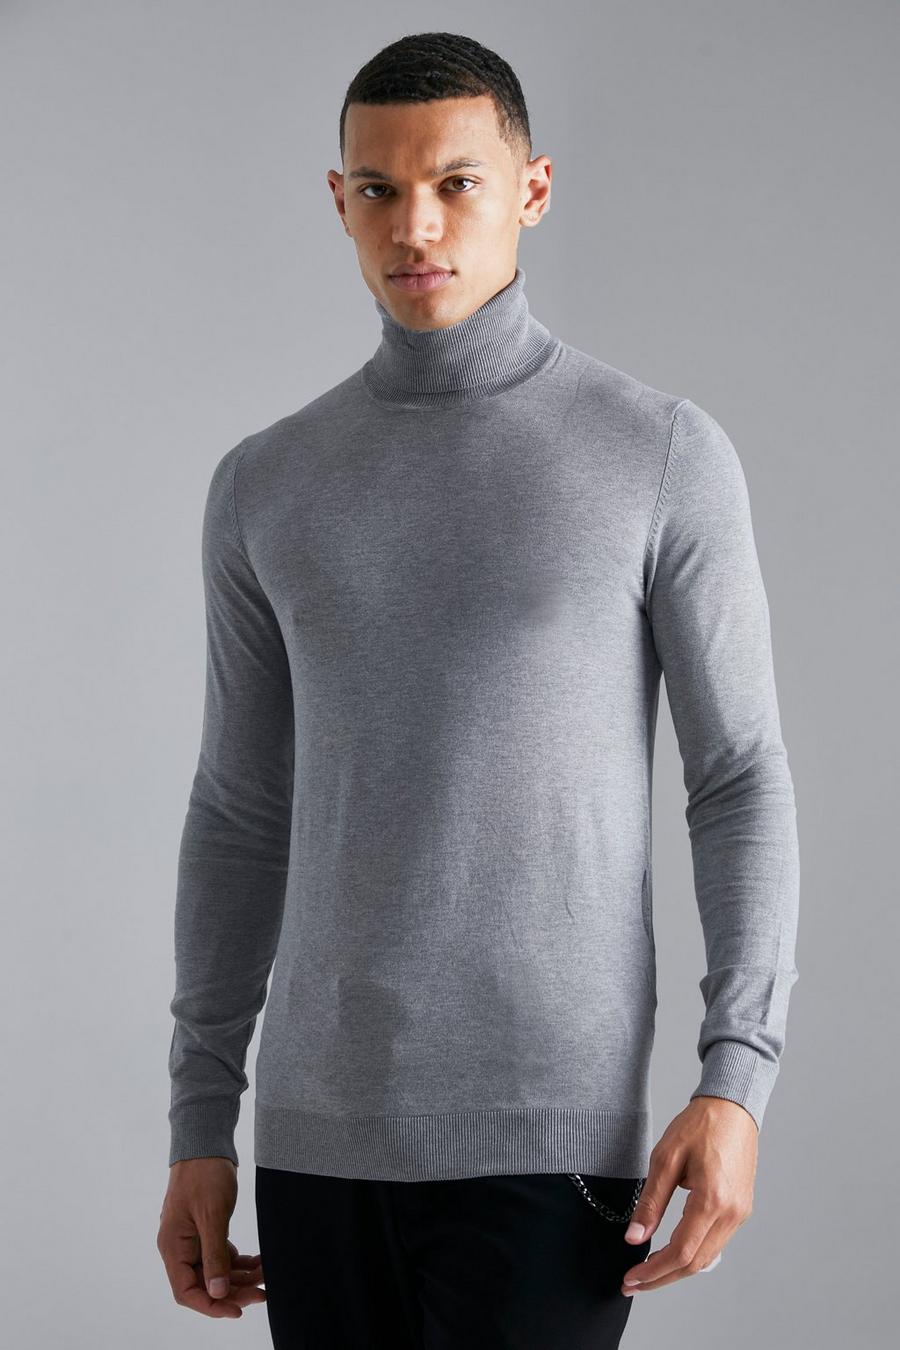 סלע אפור grey סוודר בגזרה צמודה מבד ממוחזר עם צווארון גולף לגברים גבוהים